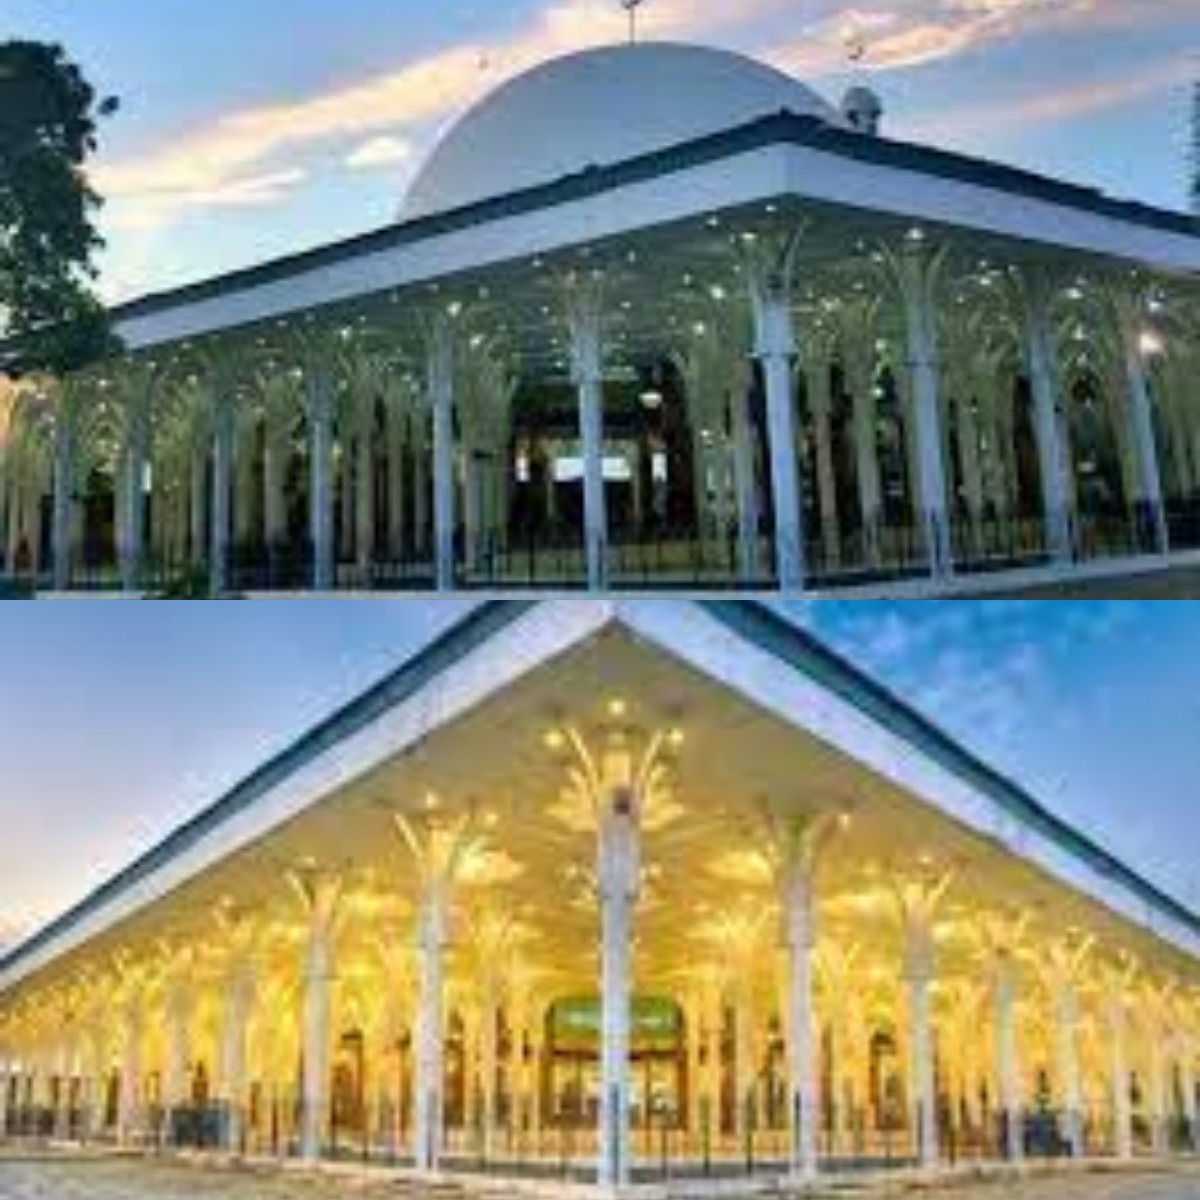 Mengenal Sejarah Keagungan Arsitektur Masjid 1000 Tiang di Jambi